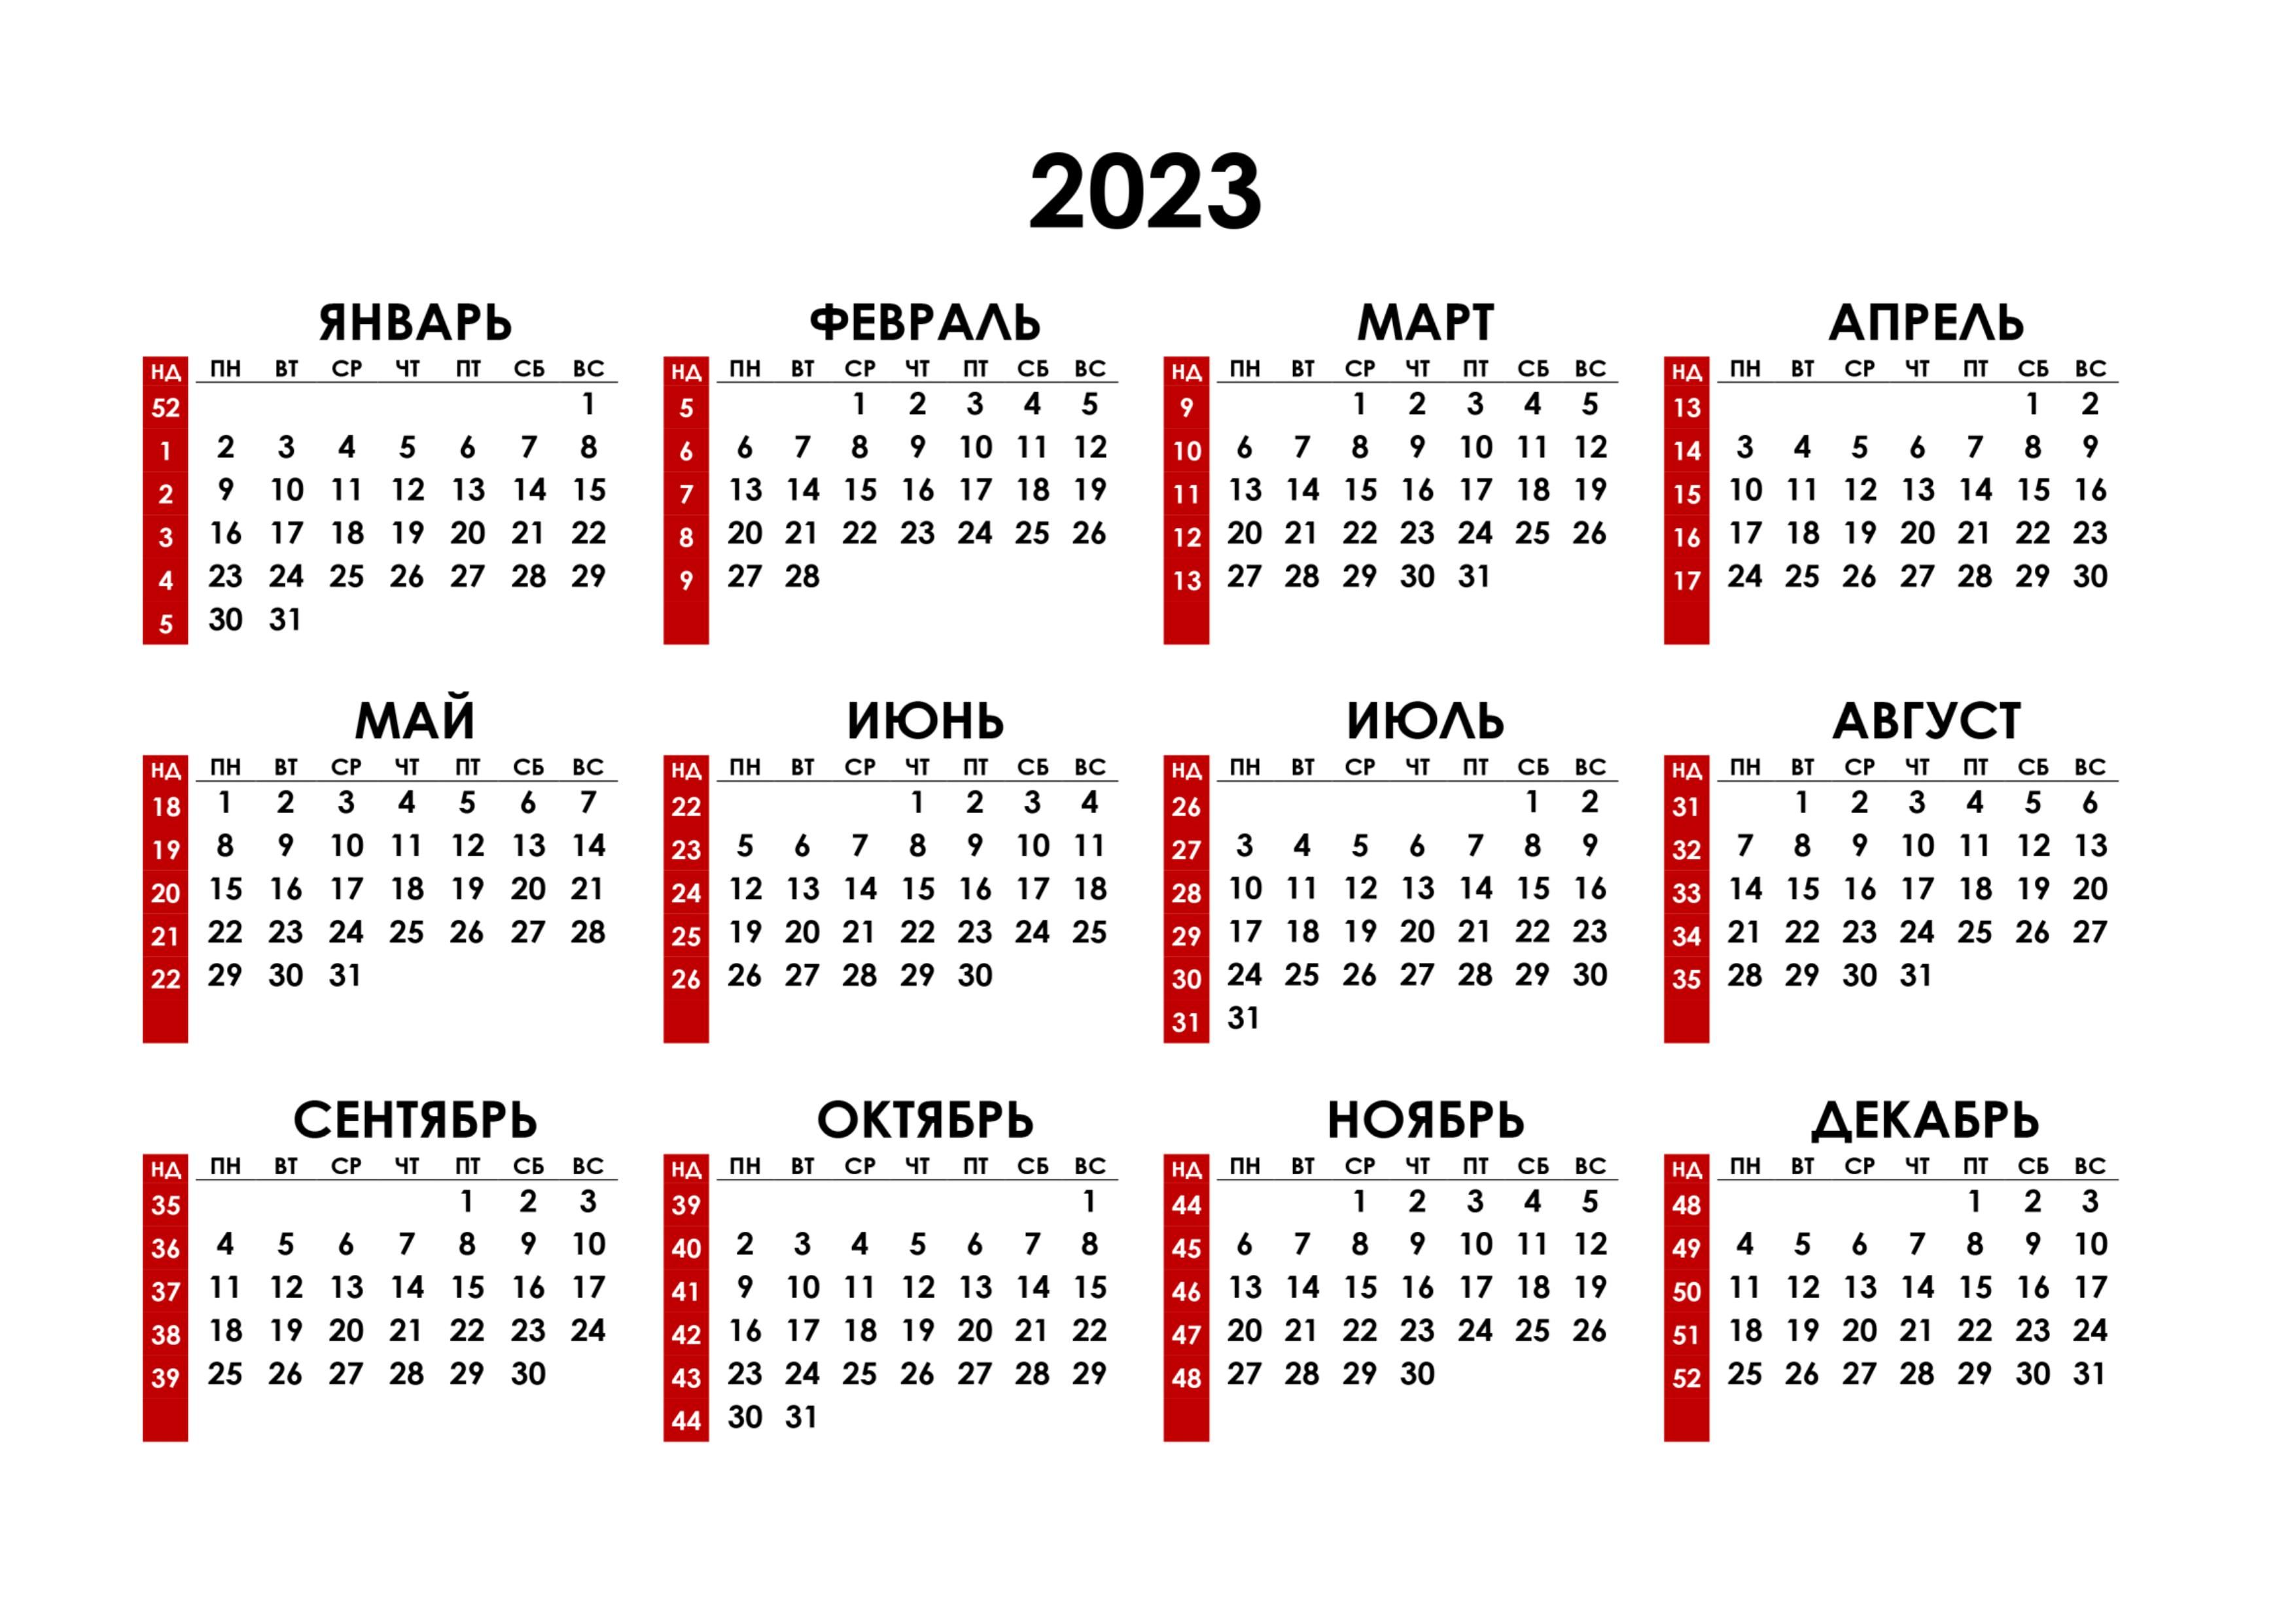 Какое сегодня день недели и число 2023. Календарь на 2023 год. Календарь с номерами недель 2023. Календарь синомерами недель. Hrfktylfhm PF 2023 ujl.